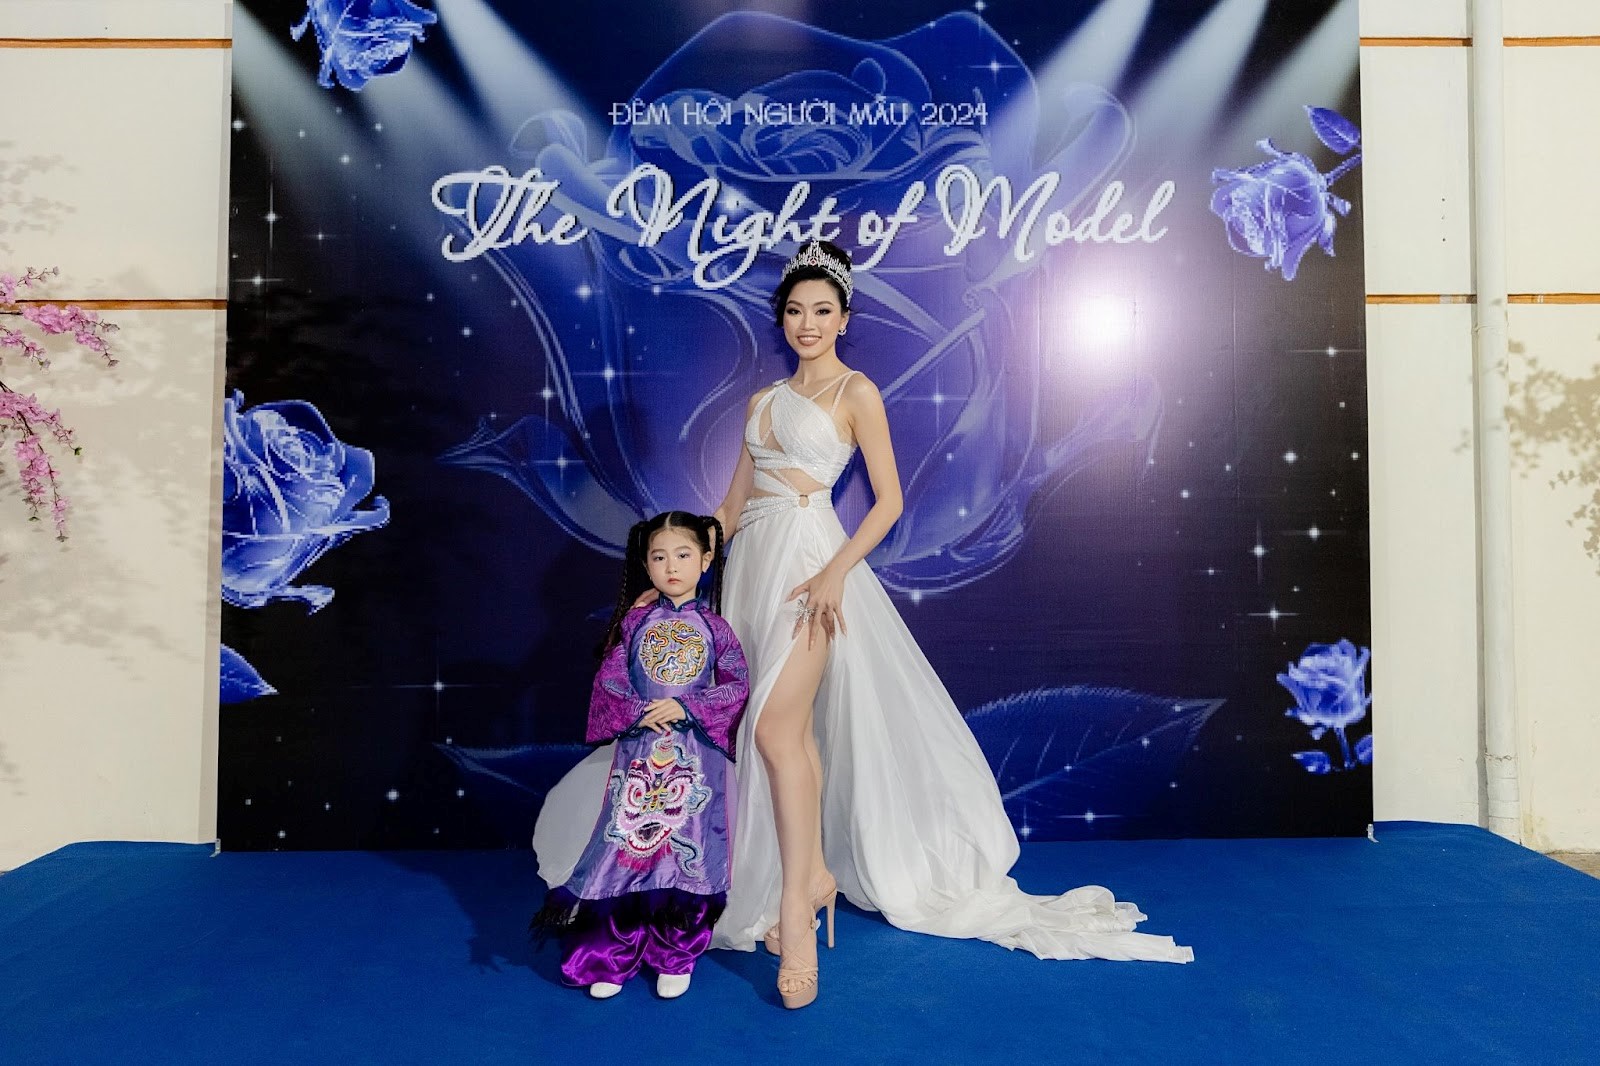 Nguyễn Phạm Ngân Anh đạt giải “Siêu mẫu nhí tiêu biểu” tại The Night of Model 2024